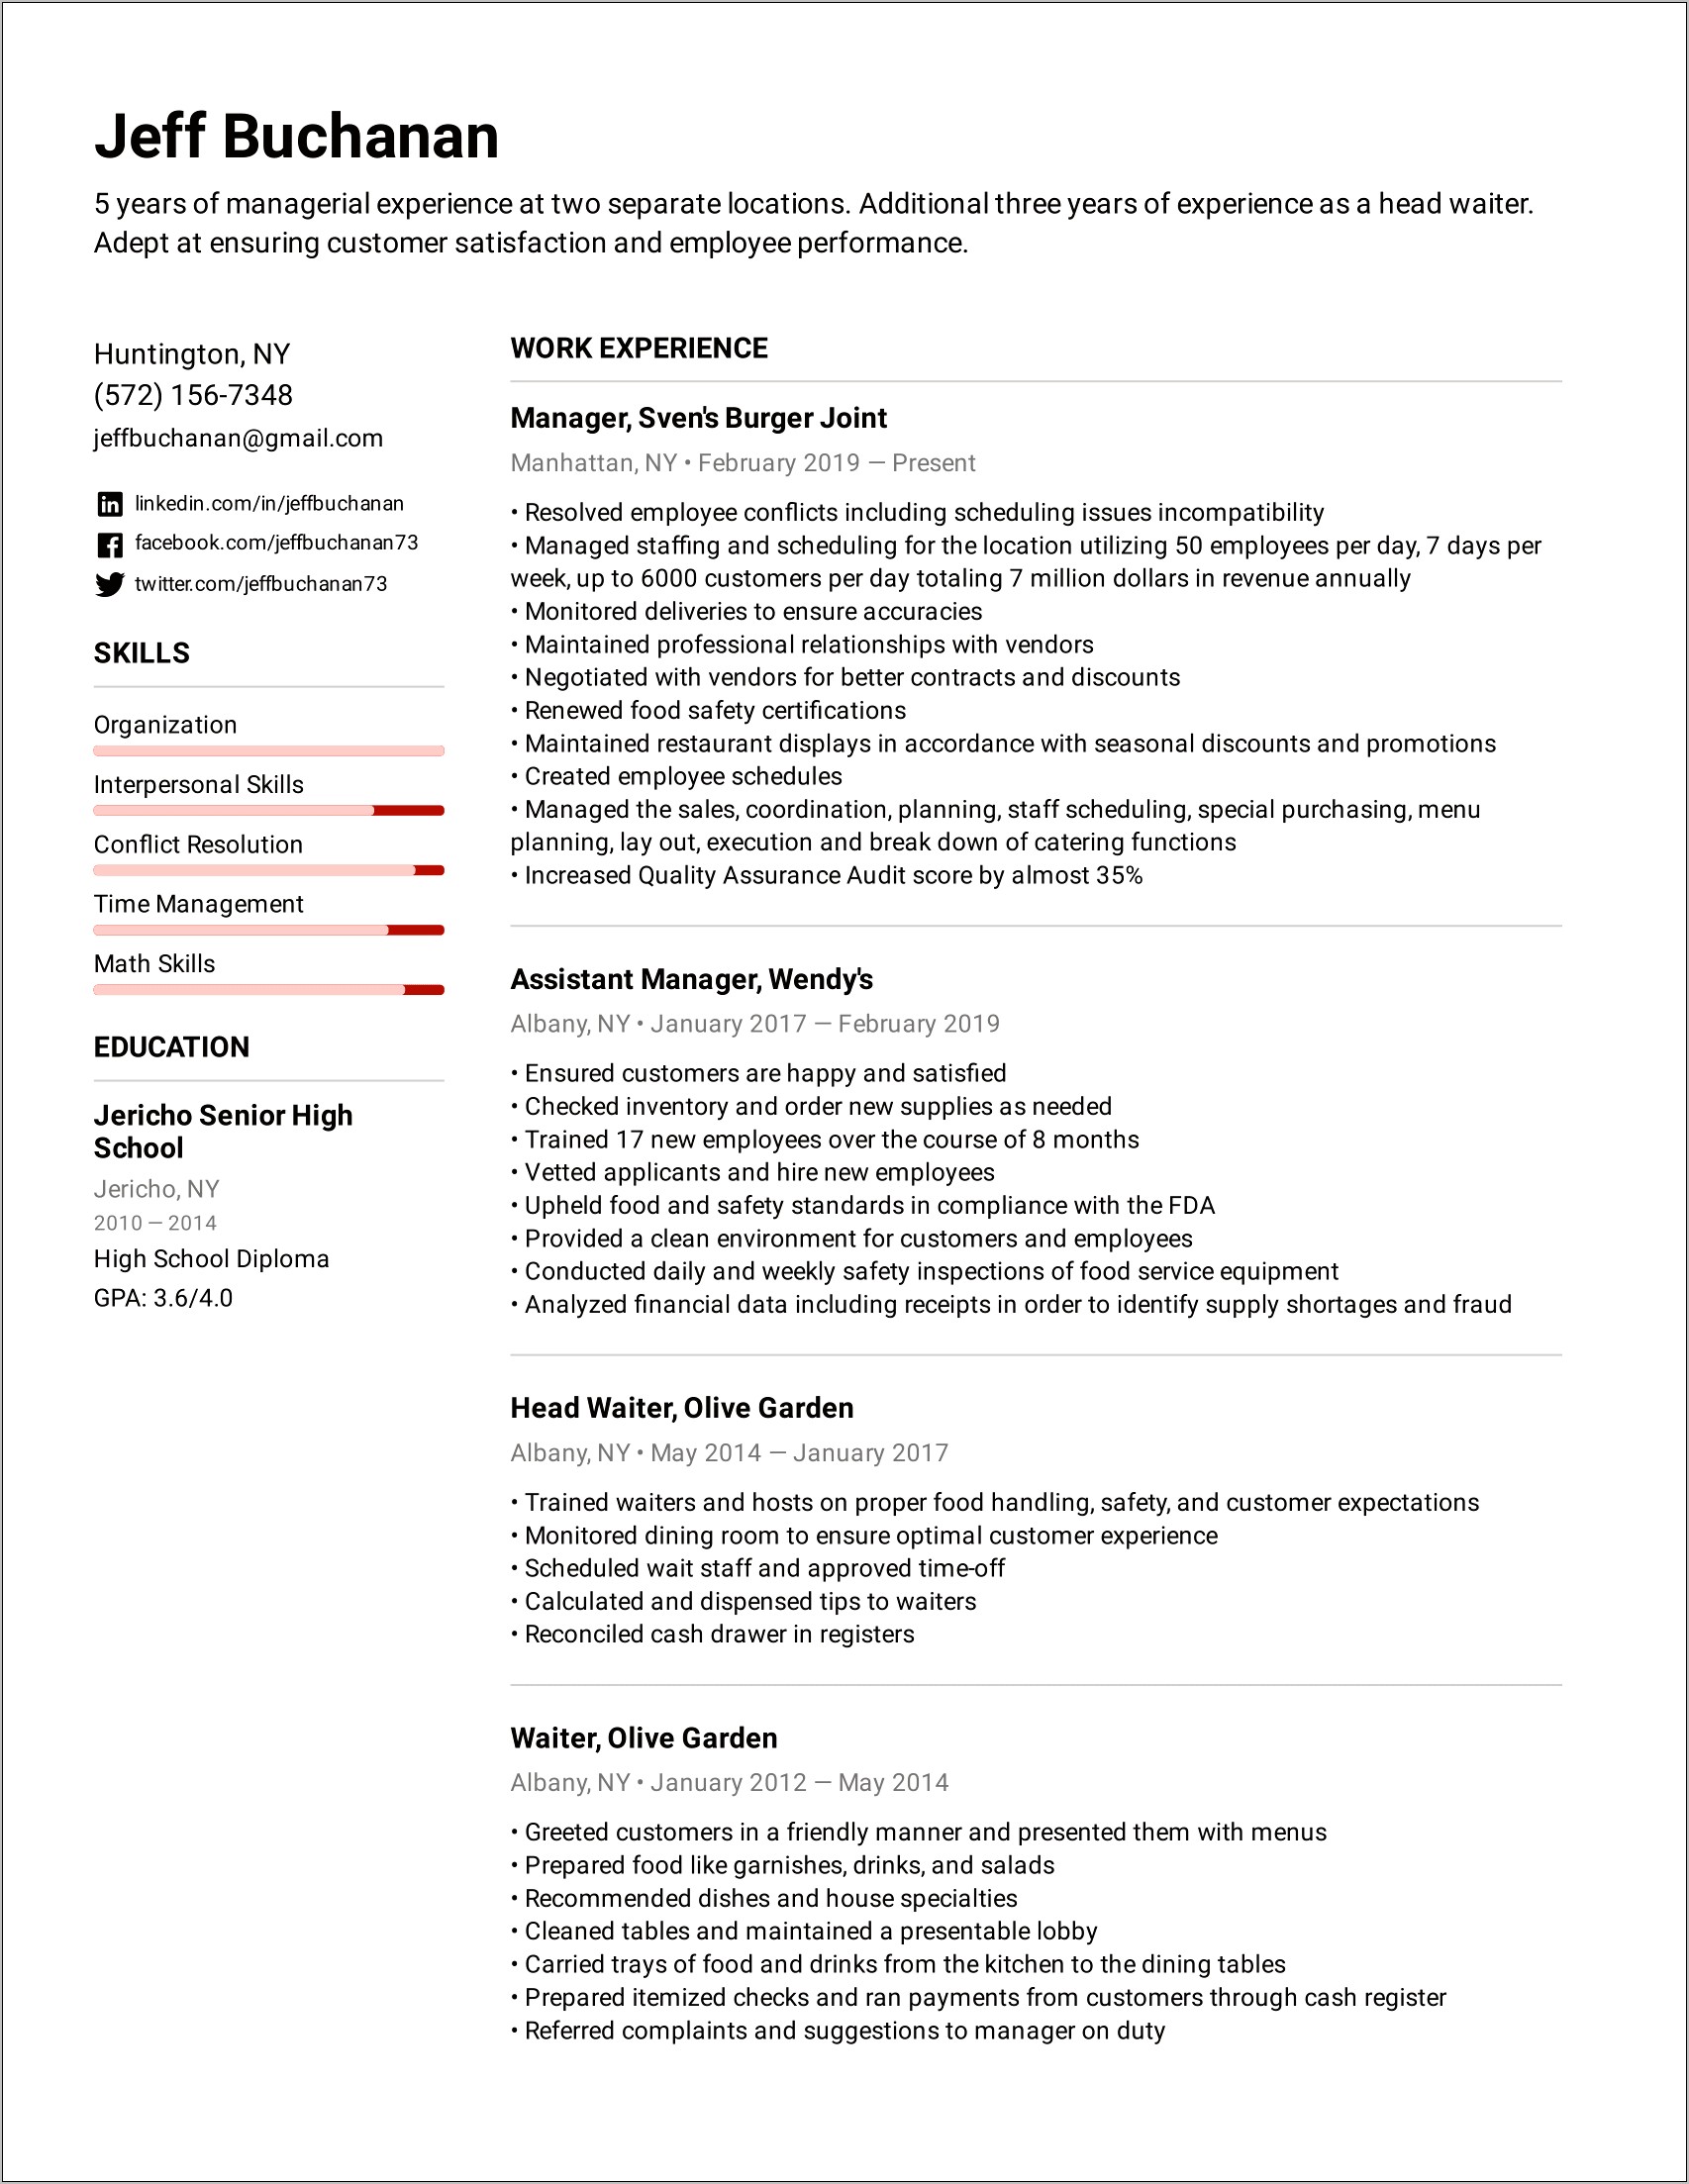 Resume Job Description For Resturaunt